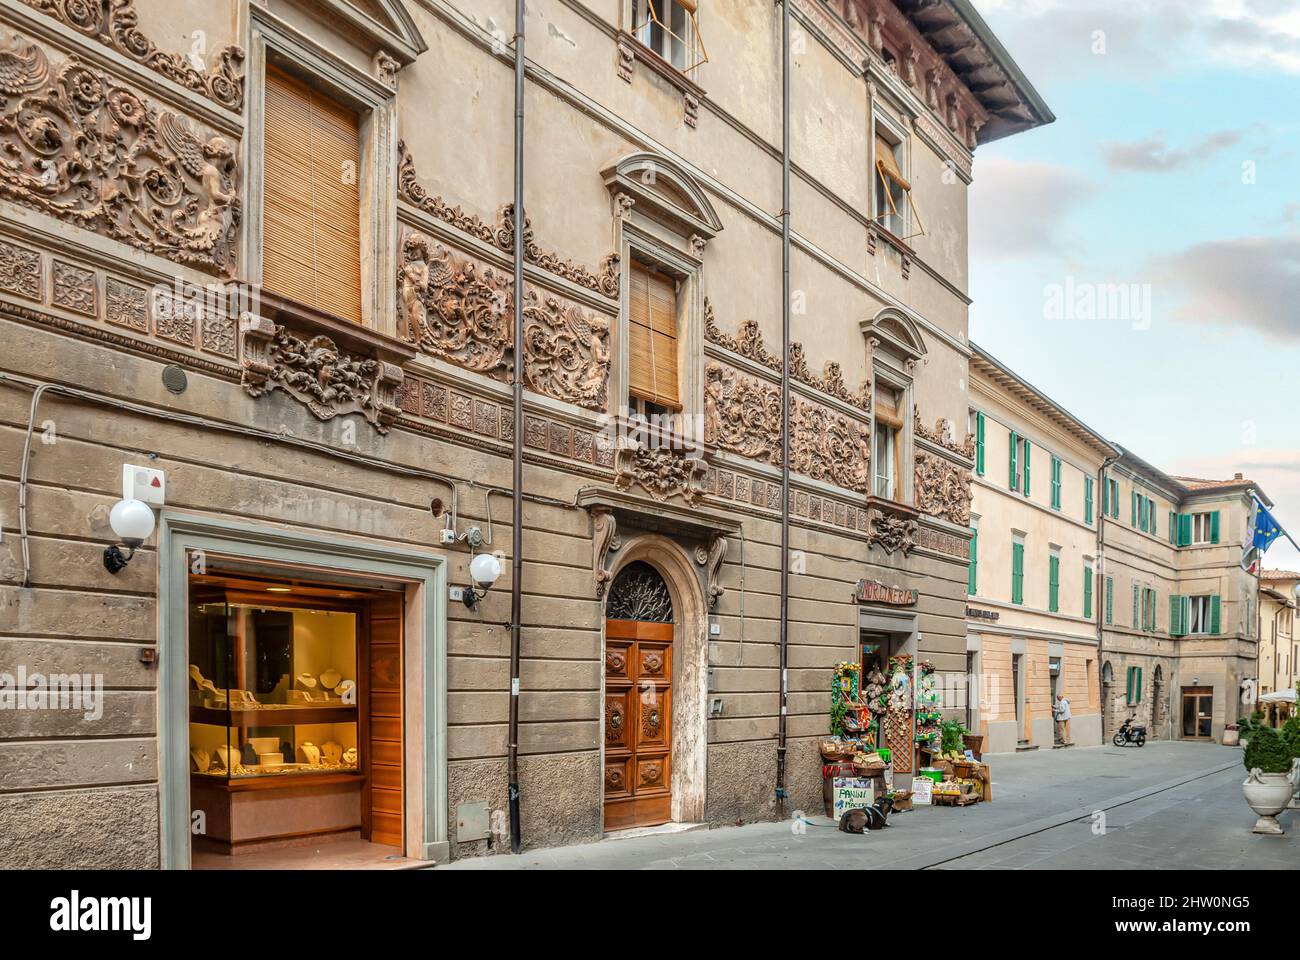 Town center of Castiglione del Lago, Umbria, Italy Stock Photo